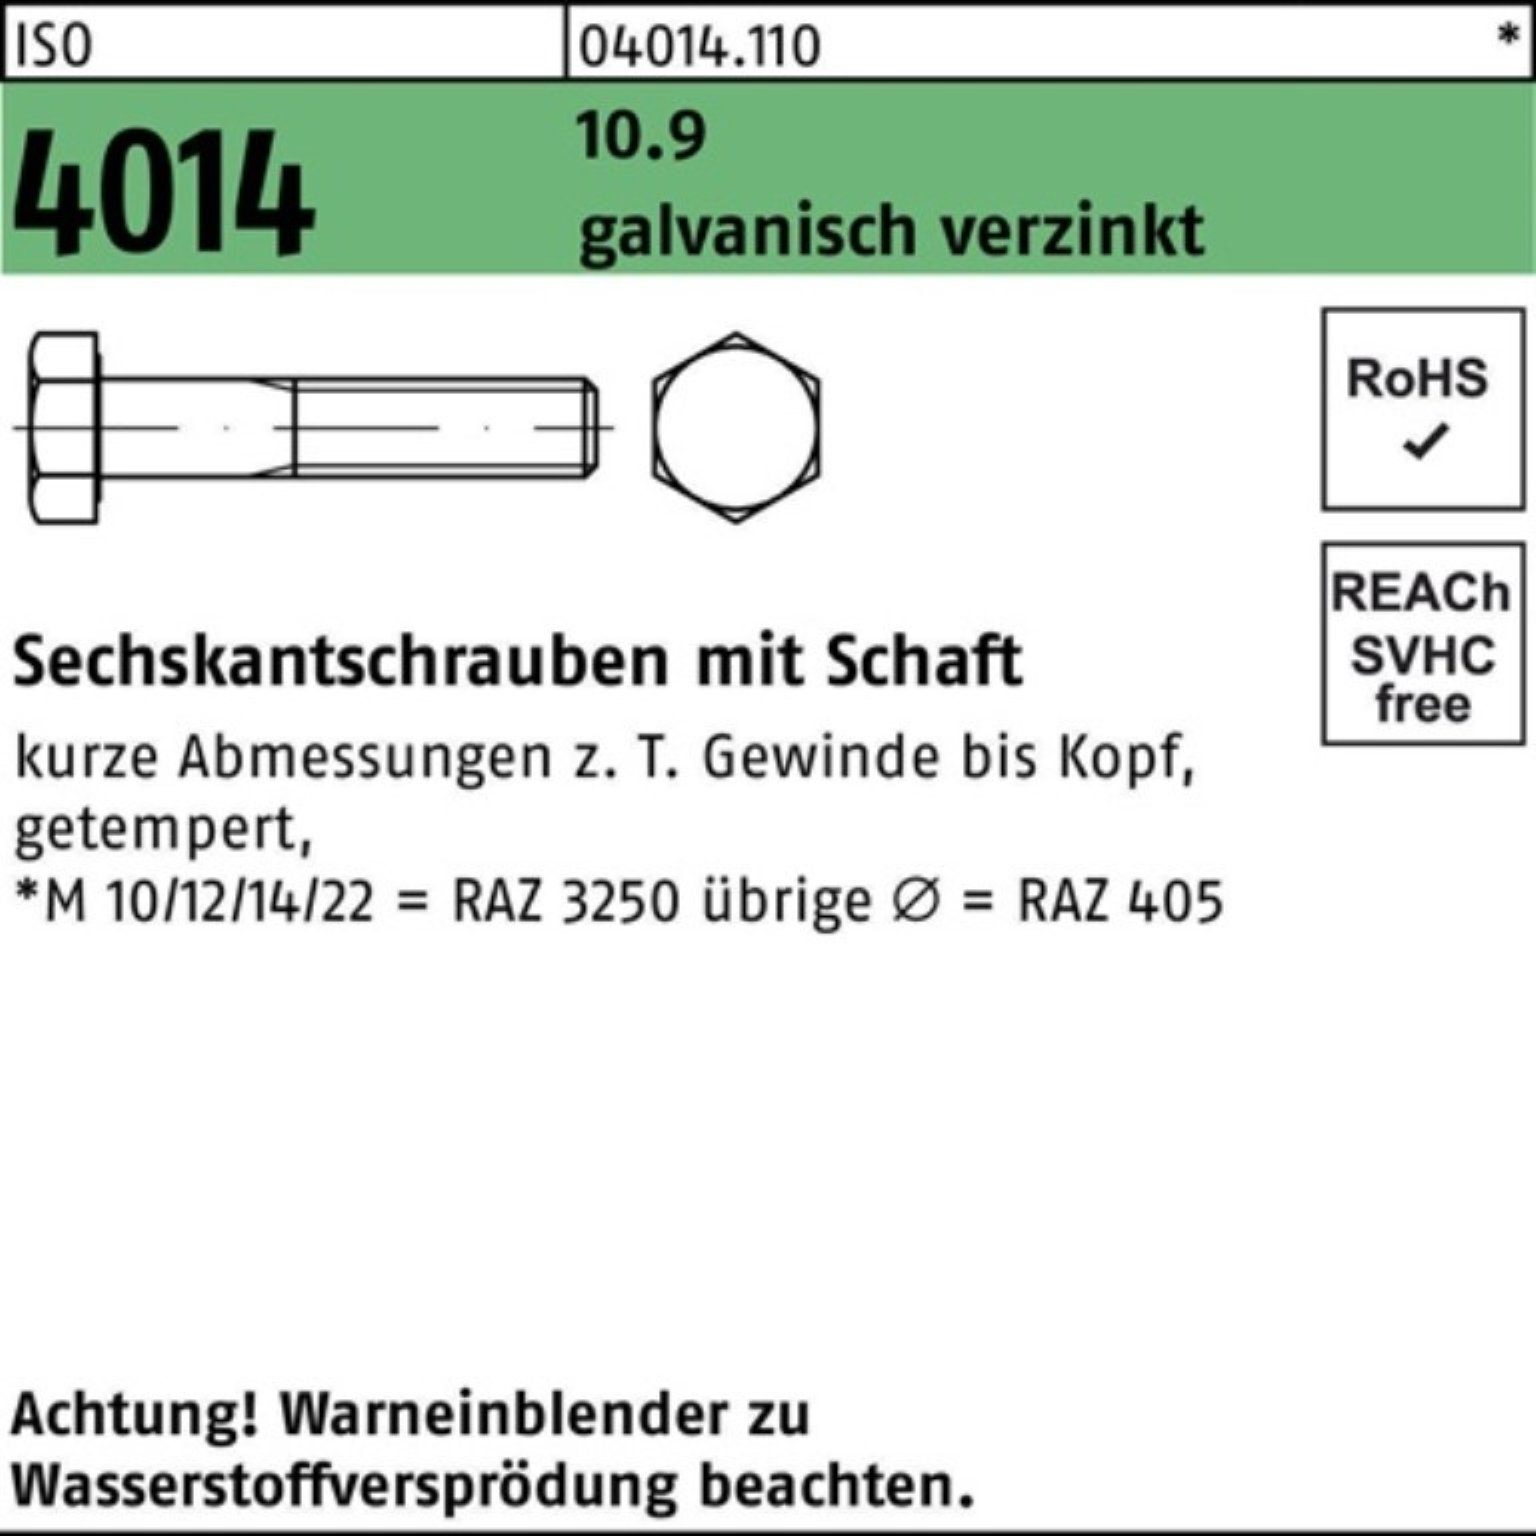 ISO Sechskantschraube 100er Bufab 10.9 Pack 160 M10x galv.verz. 4014 Sechskantschraube Schaft